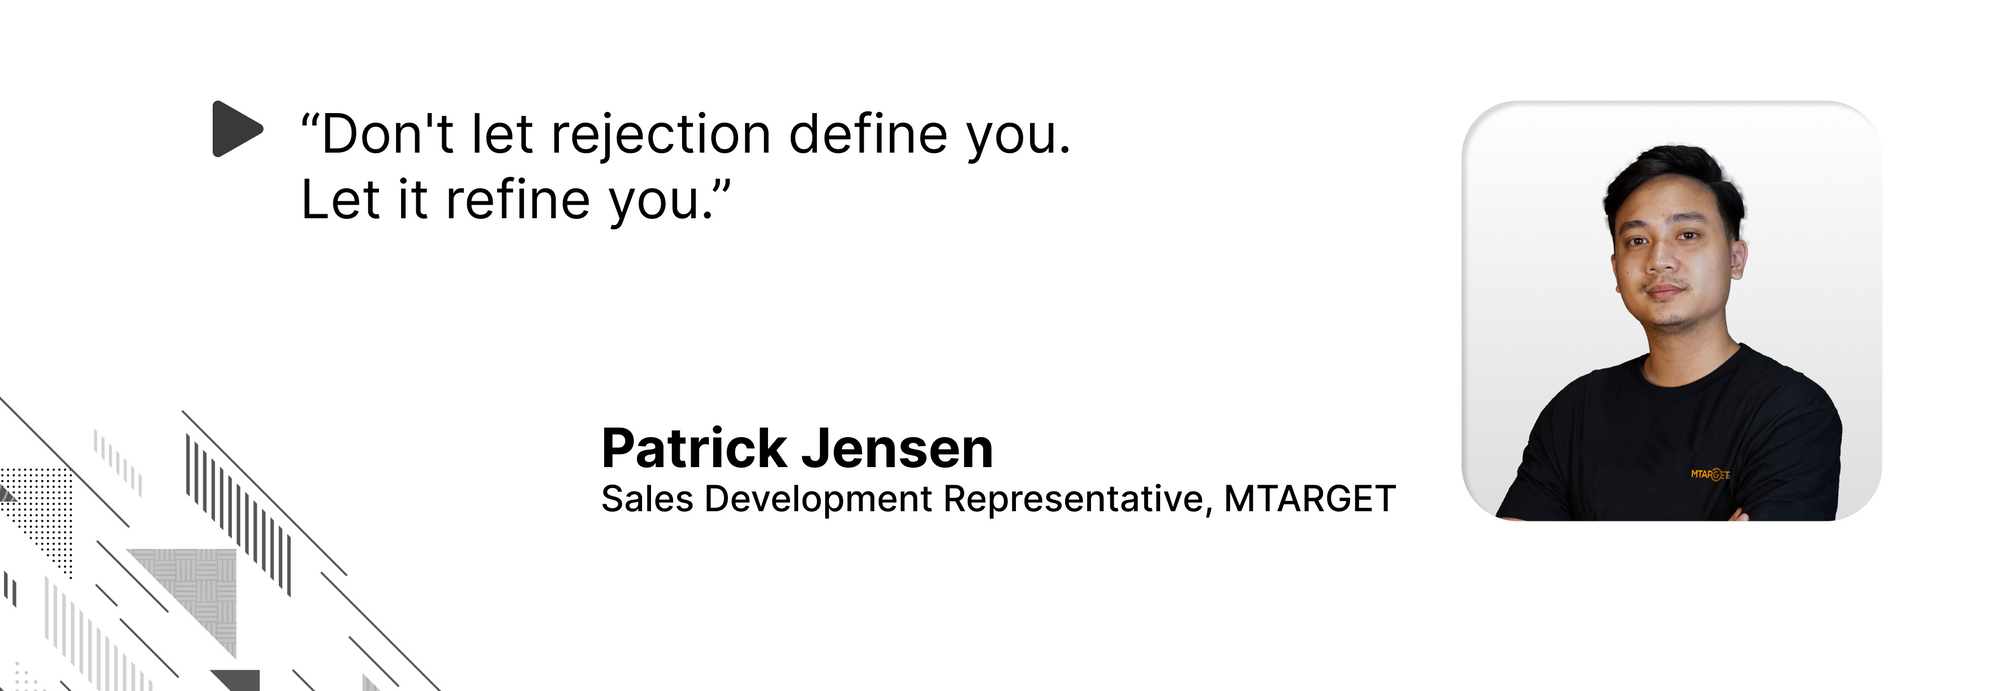 Quote oleh Patrick Jensen, "Don't let rejection define you. Let it refine you."